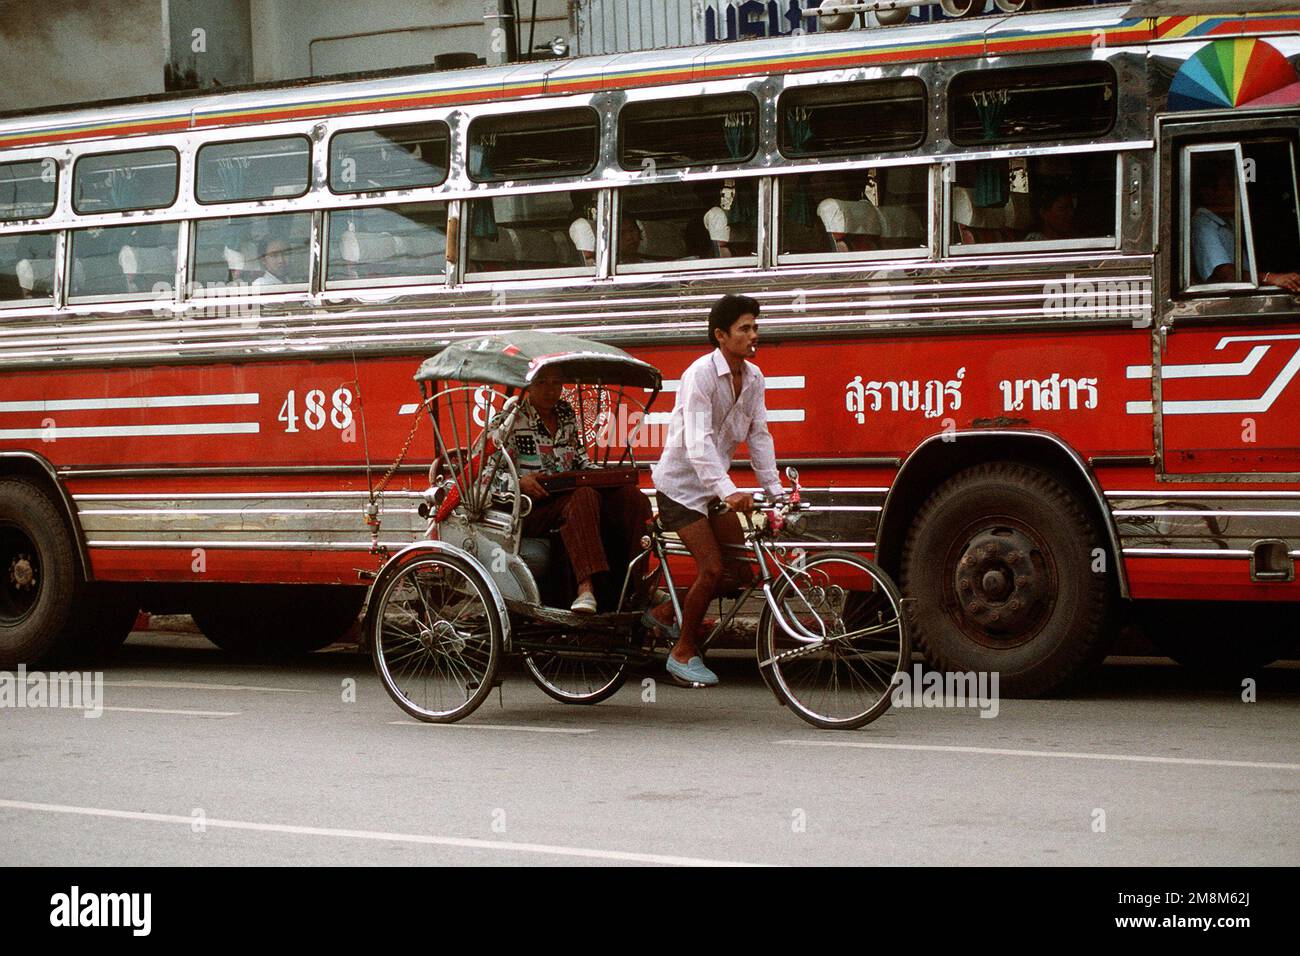 I tradizionali carrelli per biciclette e gli autobus moderni coesistono vicino alla giungla dove si svolge Cobra Gold. Exact Date Shot Unknown pubblicato su AIRMAN Magazine Agosto 1996. Subject Operation/Series: COBRA GOLD '96 base: Surat Thani Paese: Thailandia (THA) Foto Stock